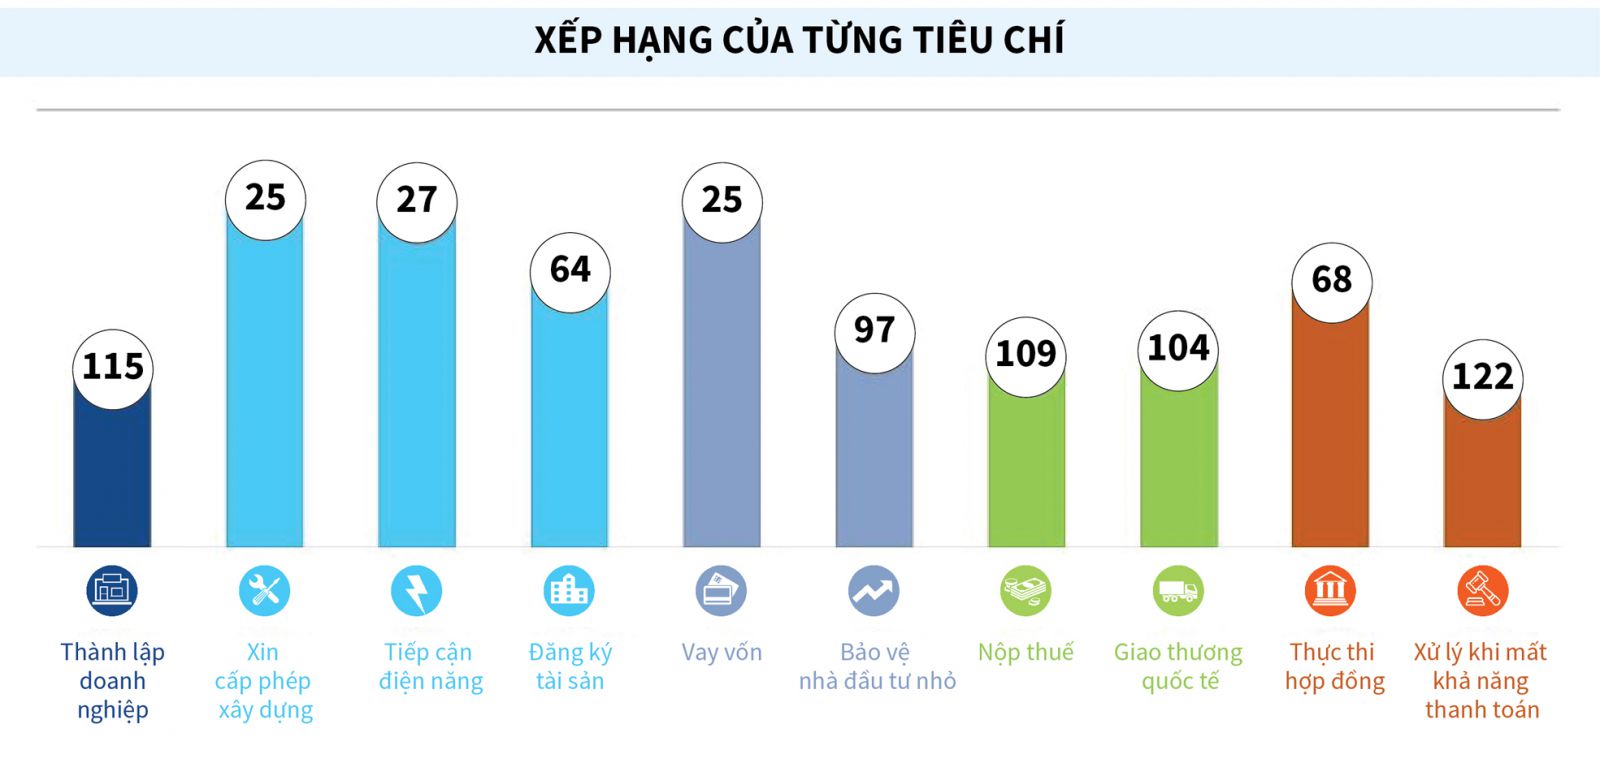 Theo Báo cáo Môi trường kinh doanh 2020 của World Bank, môi trường kinh doanh của Việt Nam tăng 1,44 điểm, xếp thứ 70/190 nền kinh tế được khảo sát.